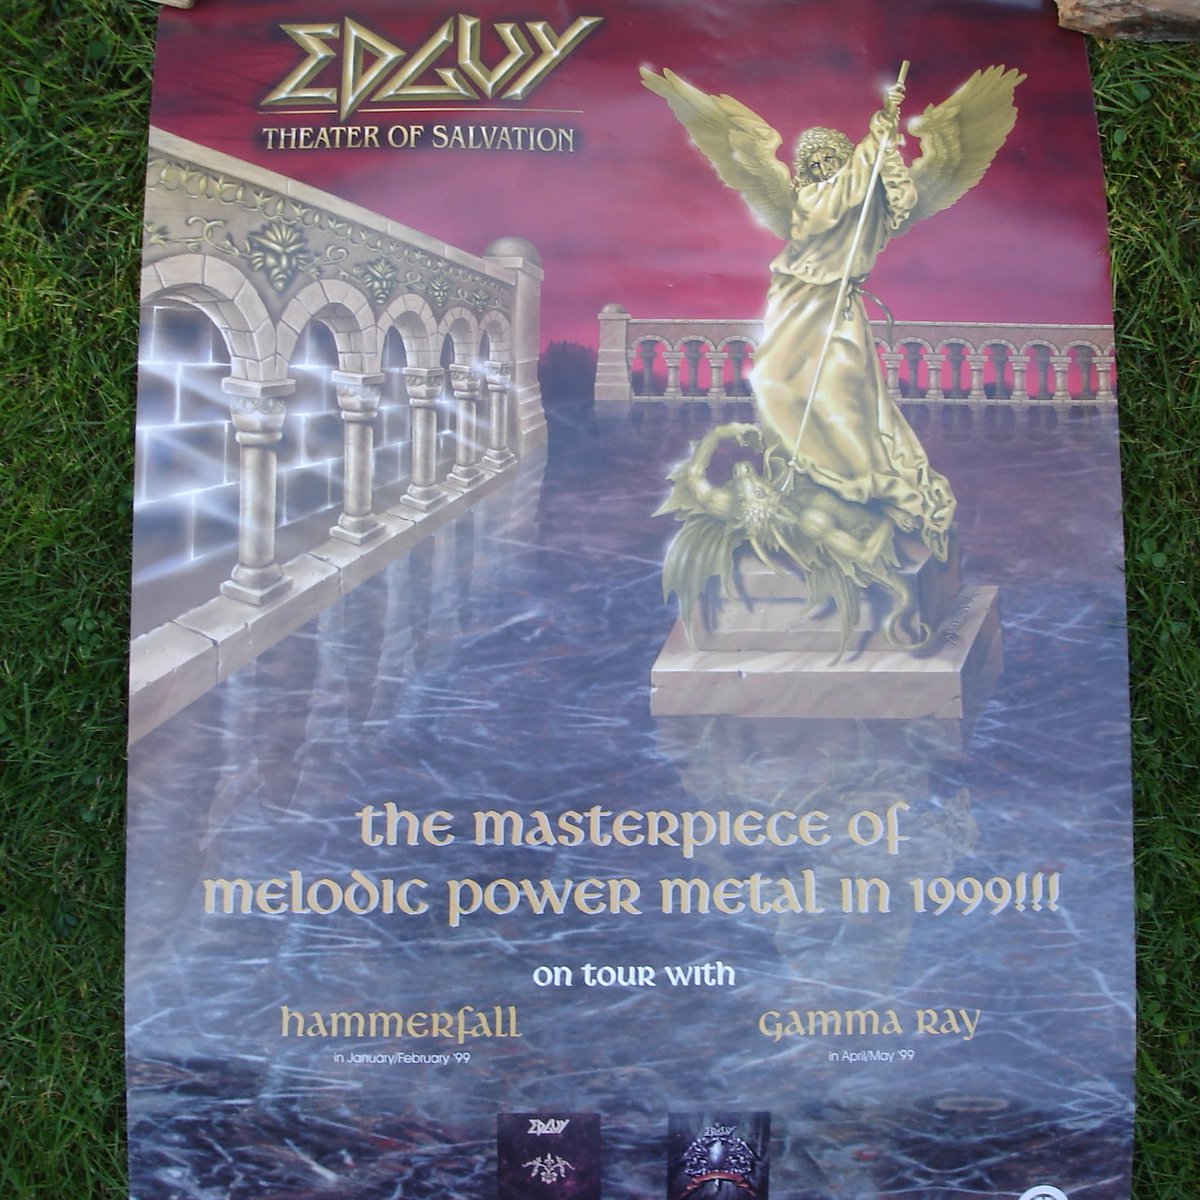 Edguy 🇩🇪🤘- Theater of Salvation - Tourposter 1999
#Edguy #Heavymetal #Metal #Germanmetal #Metalcollection @edguy @_avantasia @tobiassammet